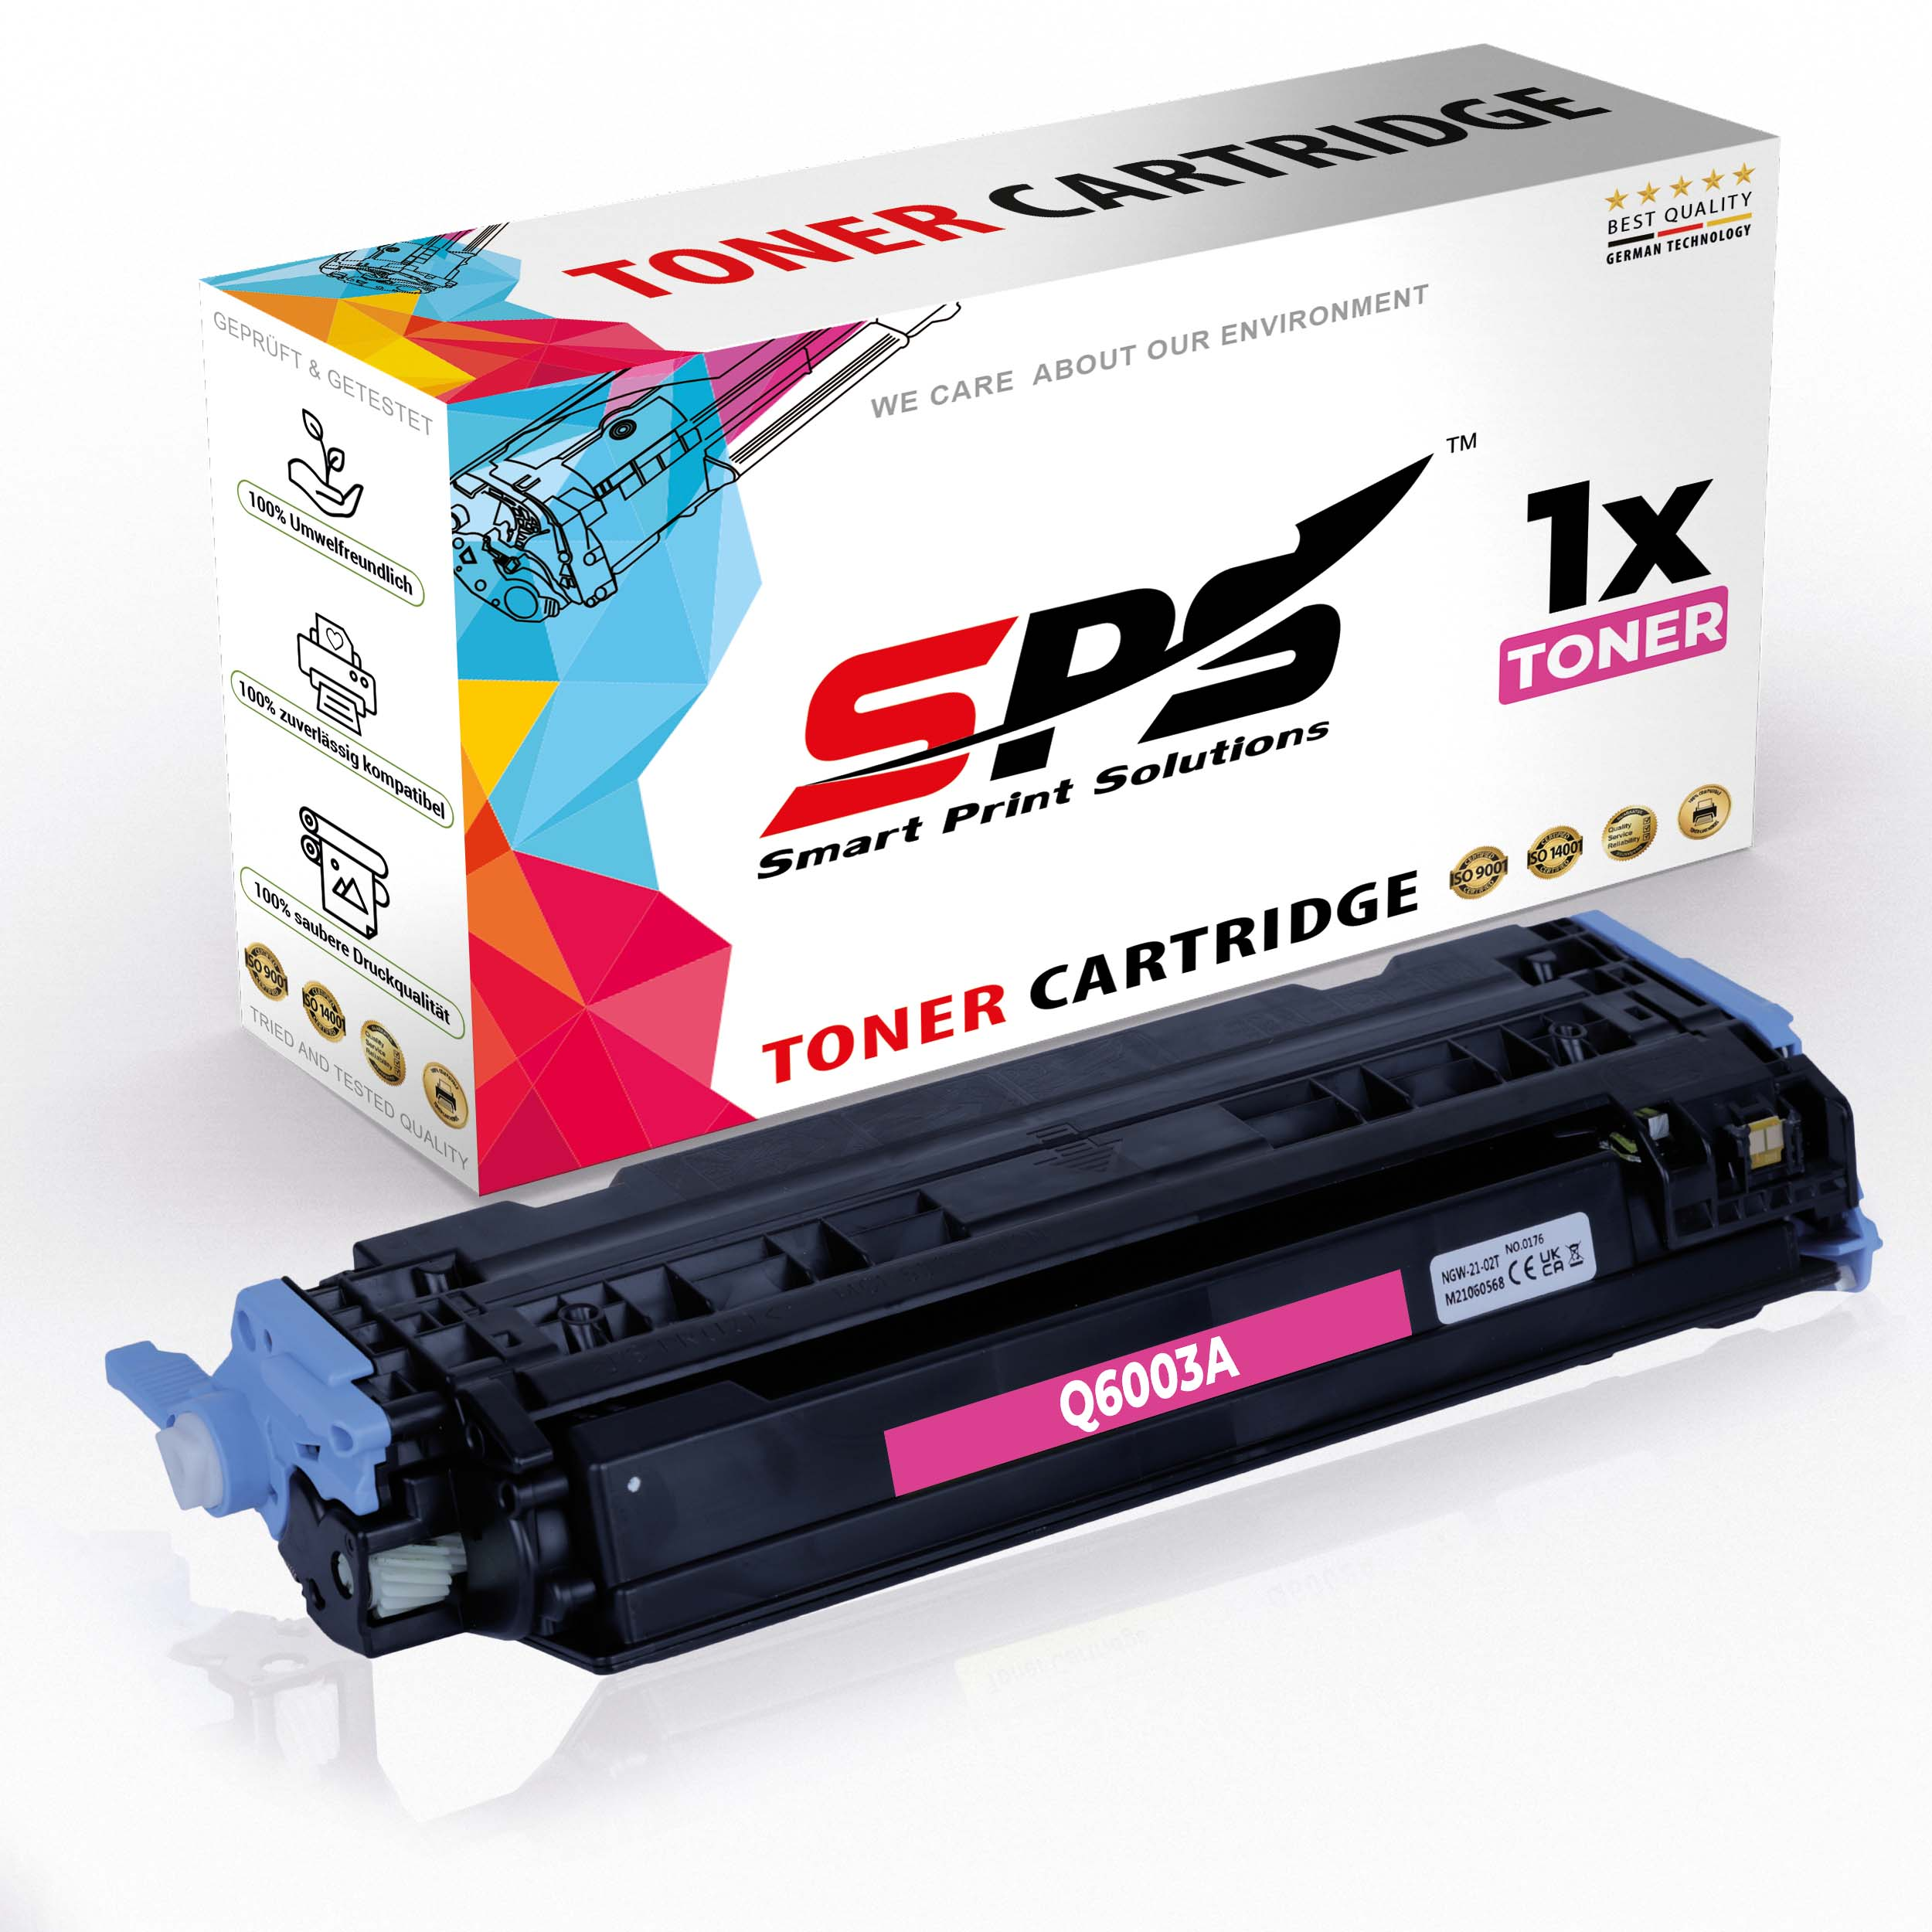 Color / Laserjet S-8219 1600LN) Toner SPS 124A Magenta (Q6003A